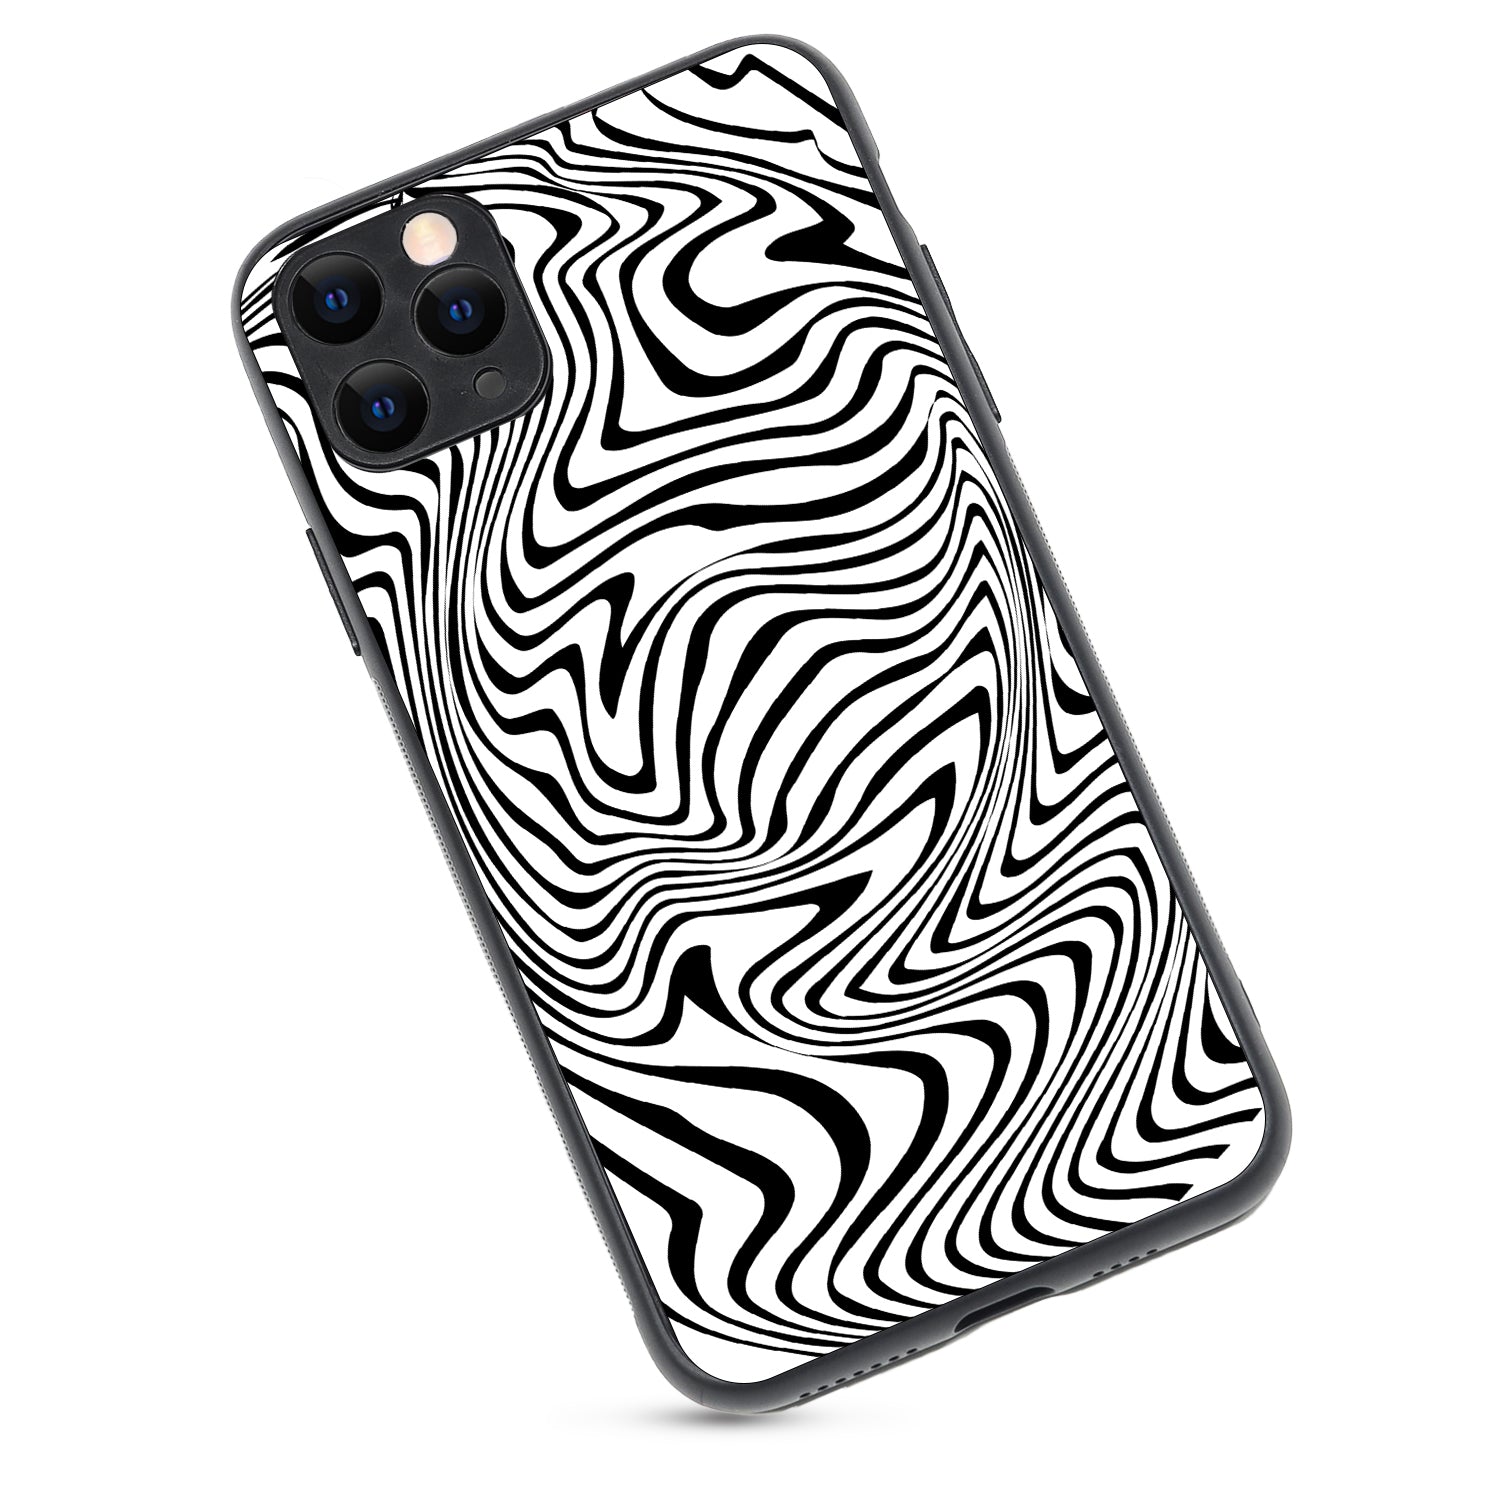 White Zig-Zag Optical Illusion iPhone 11 Pro Max Case